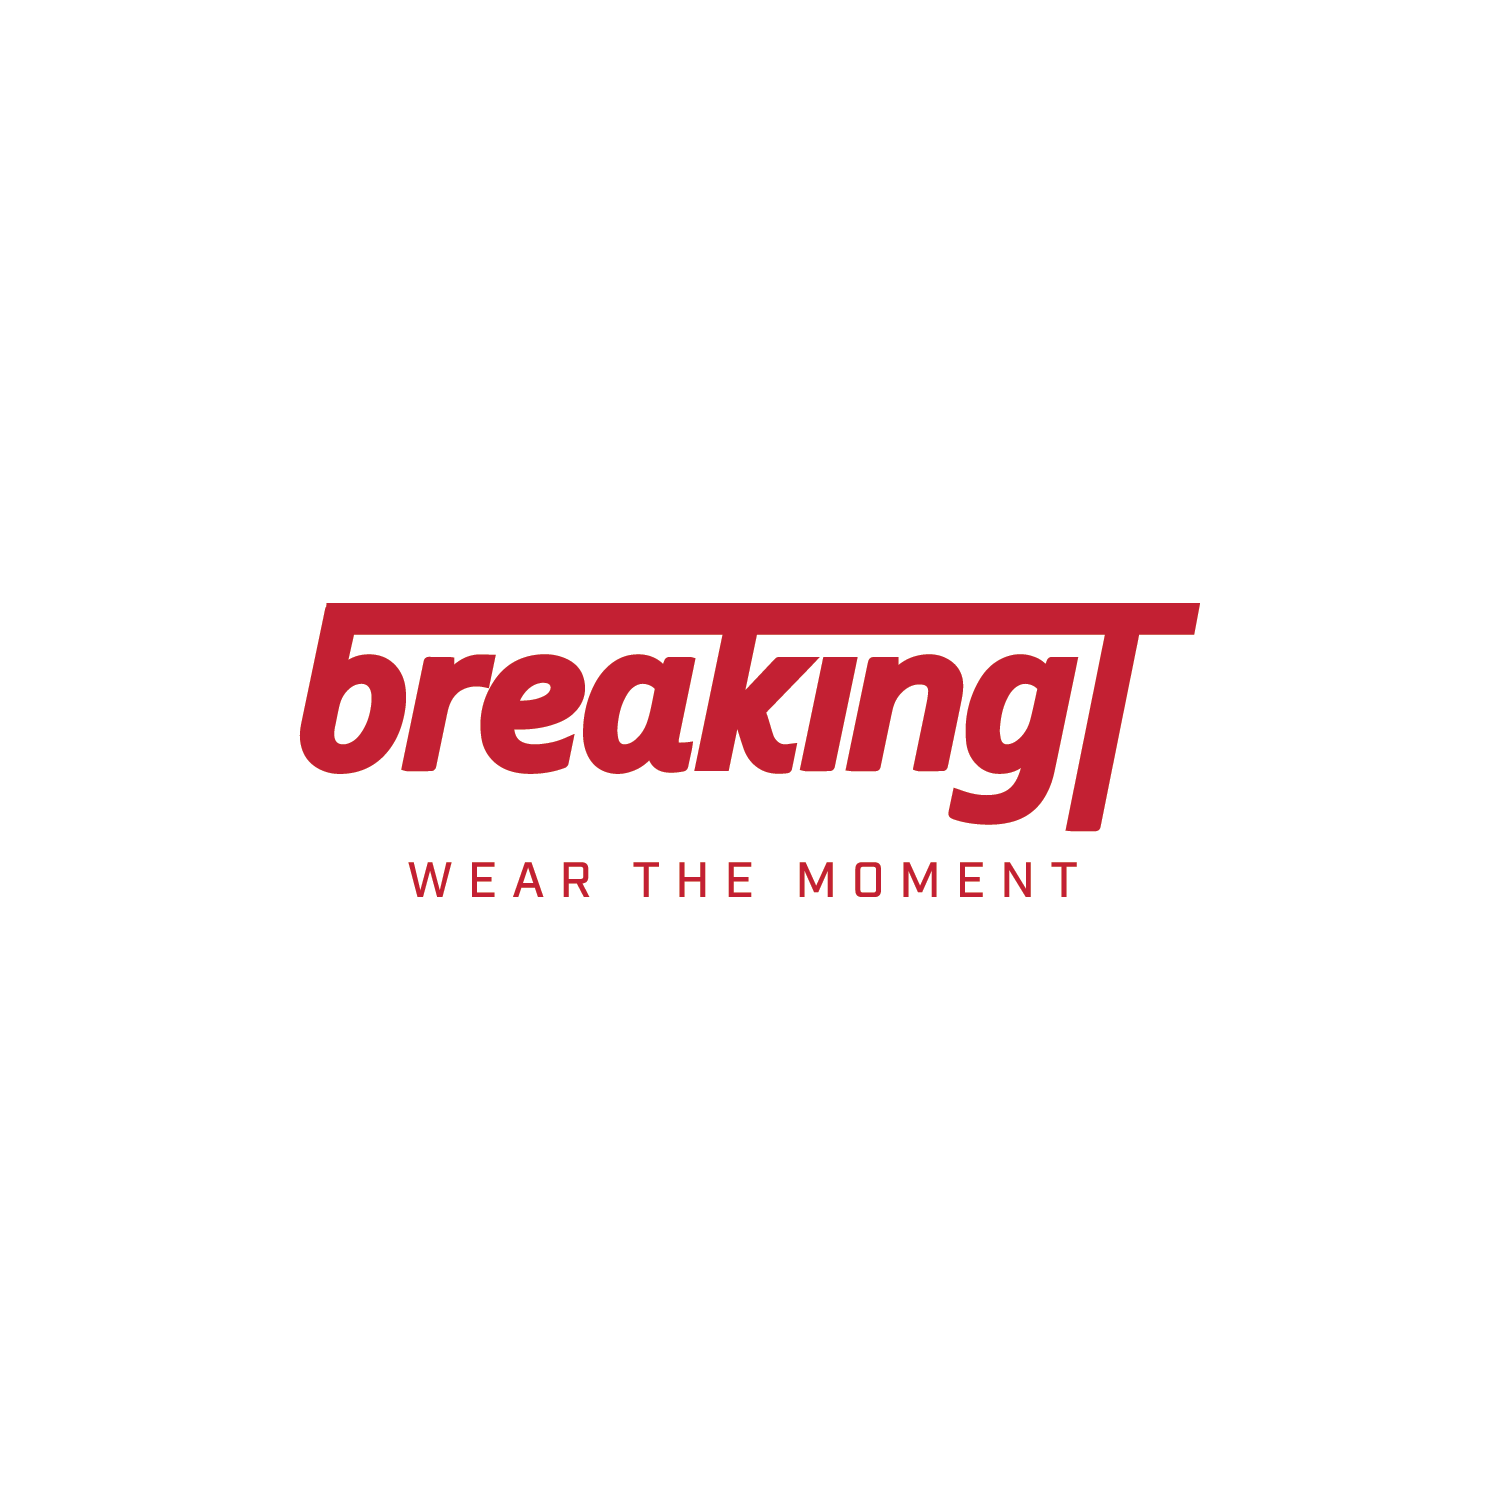 BreakingT_logo.png